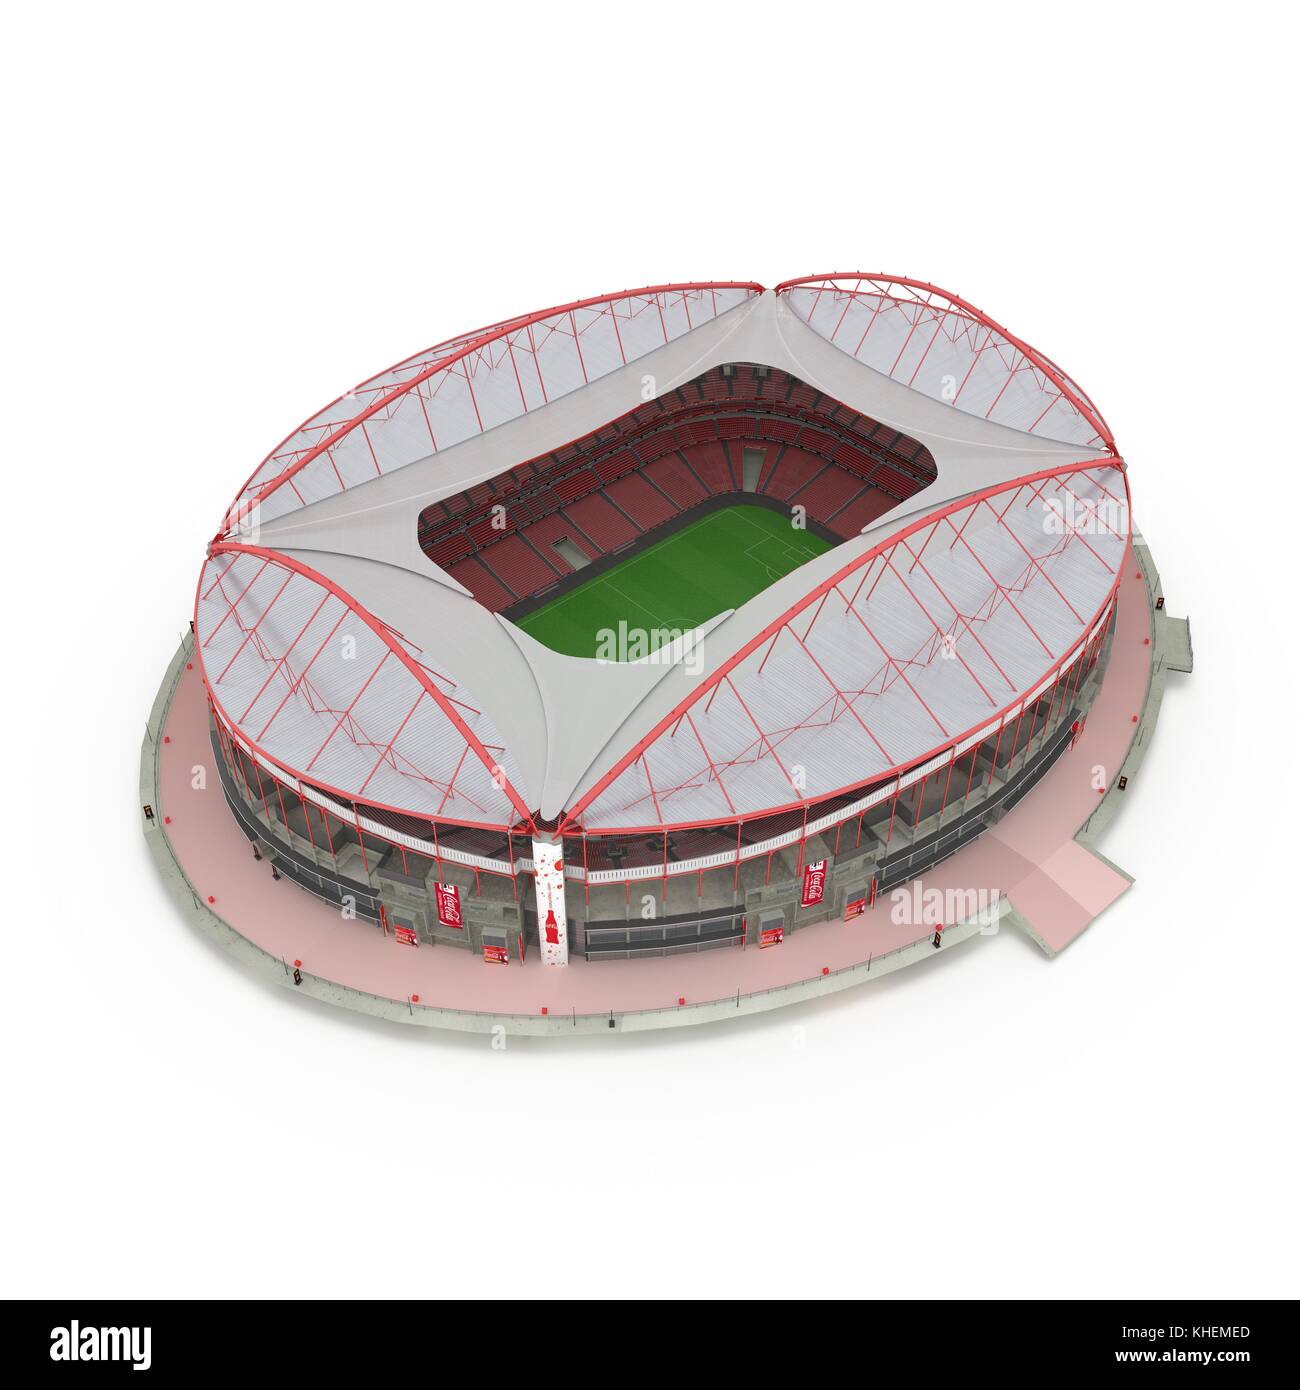 Stadium Estadio da Luz isolated on white 3d illustration Banque D'Images